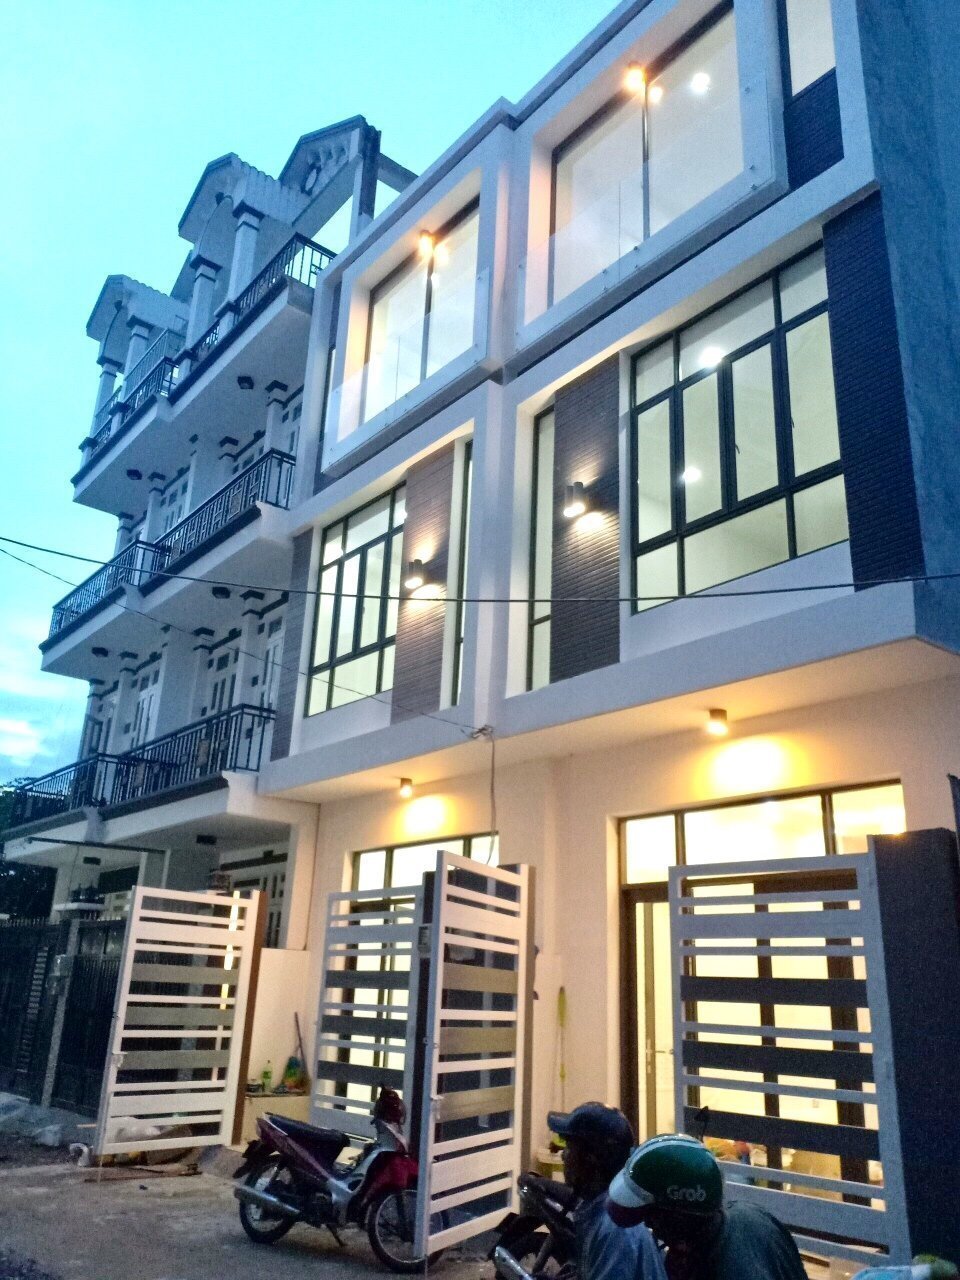 Bán nhà mới đẹp hẻm 2177 Huỳnh Tấn Phát, Nhà Bè, DT 4x13m, 3 lầu, ST. Giá 3,7 tỷ